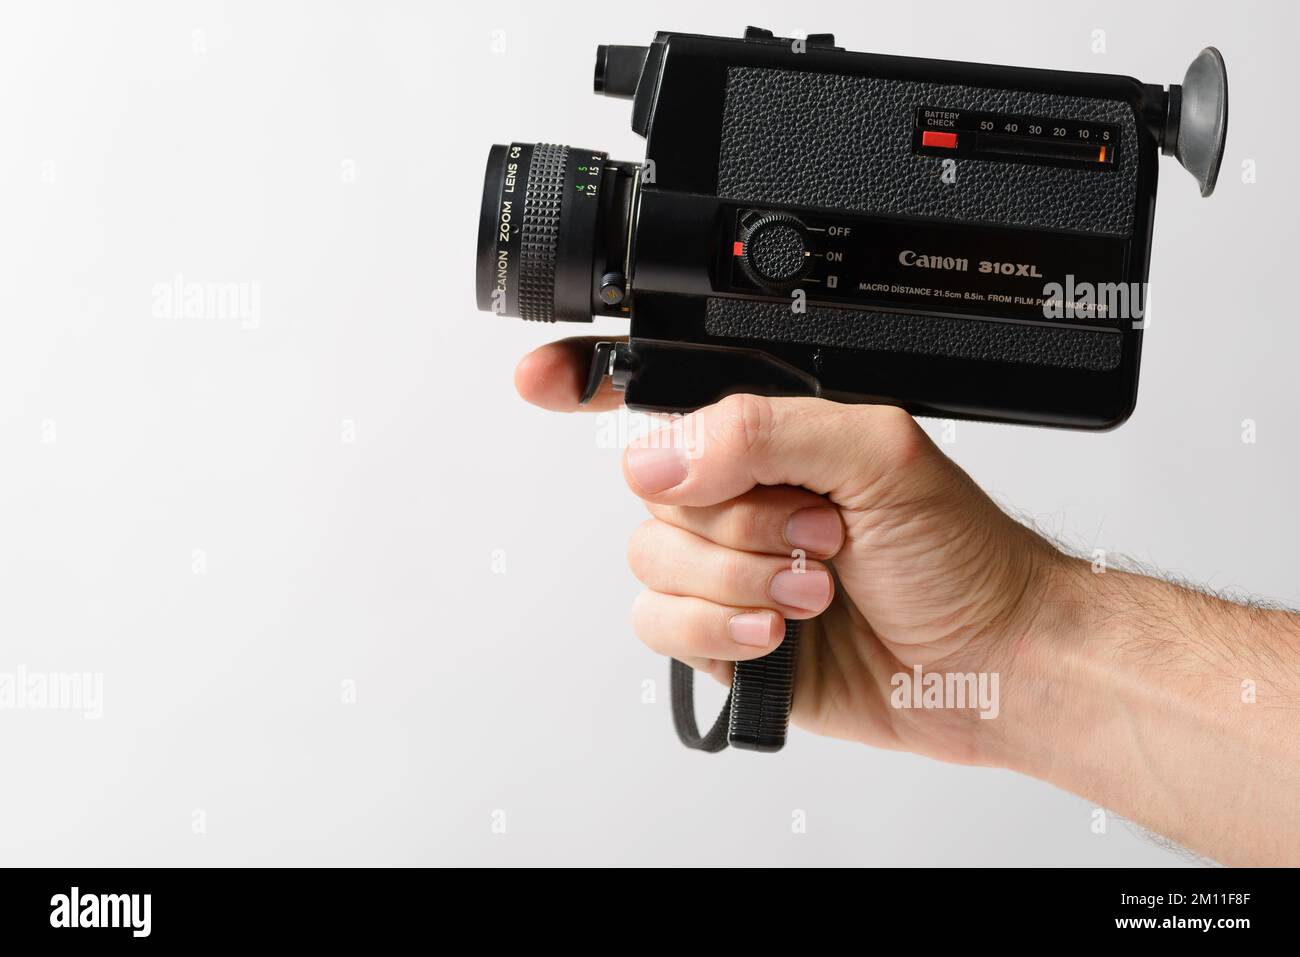 Izmir, Turquie - 8 décembre 2022: Main tenant un Canon 310xl Super 8mm amateur vieille mode appareil photo sur un fond blanc. Banque D'Images